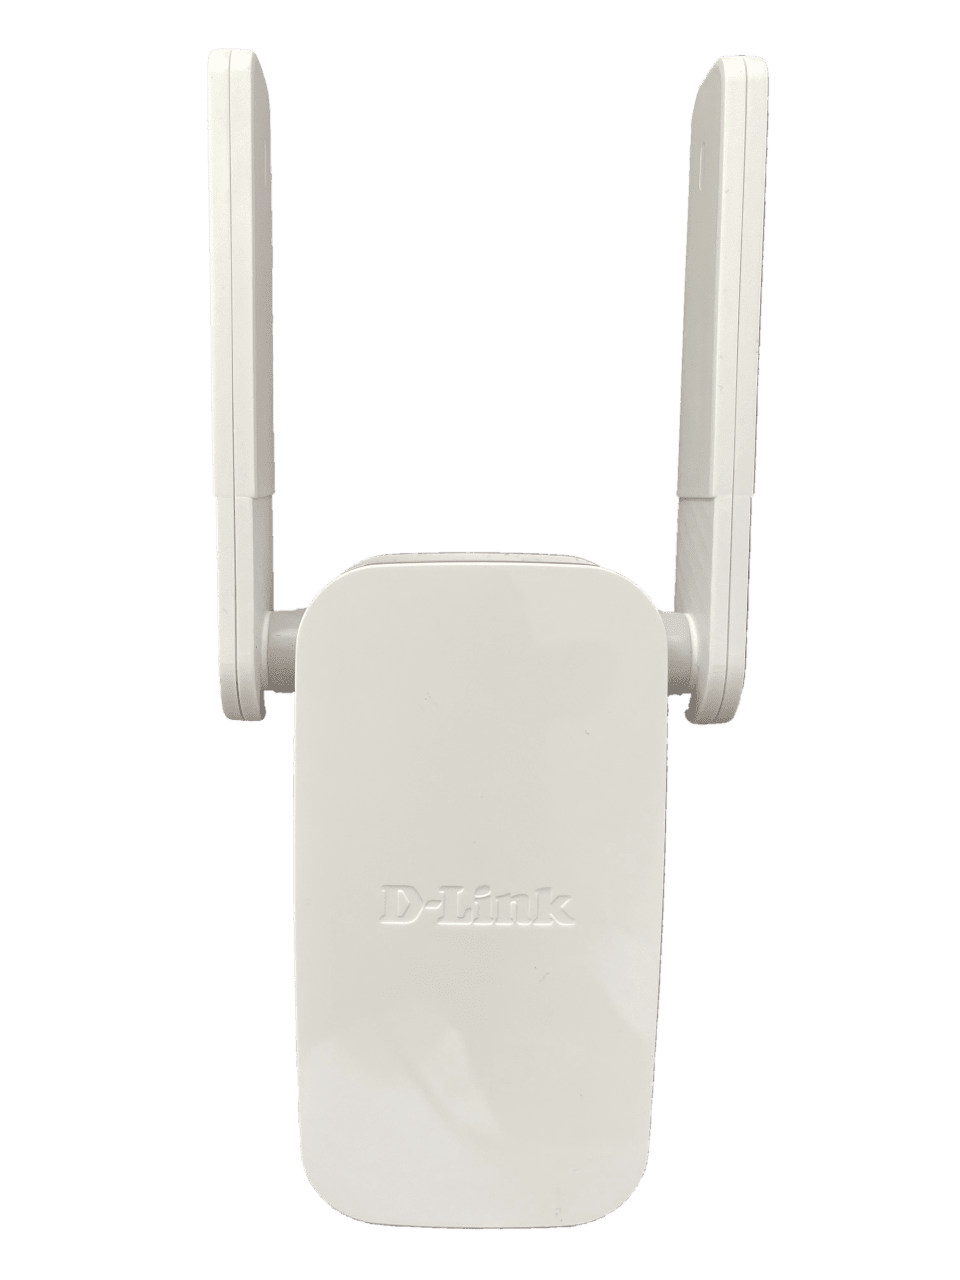 D-Link DAP-1610 AC1200 Mesh Wi-Fi Range Extender